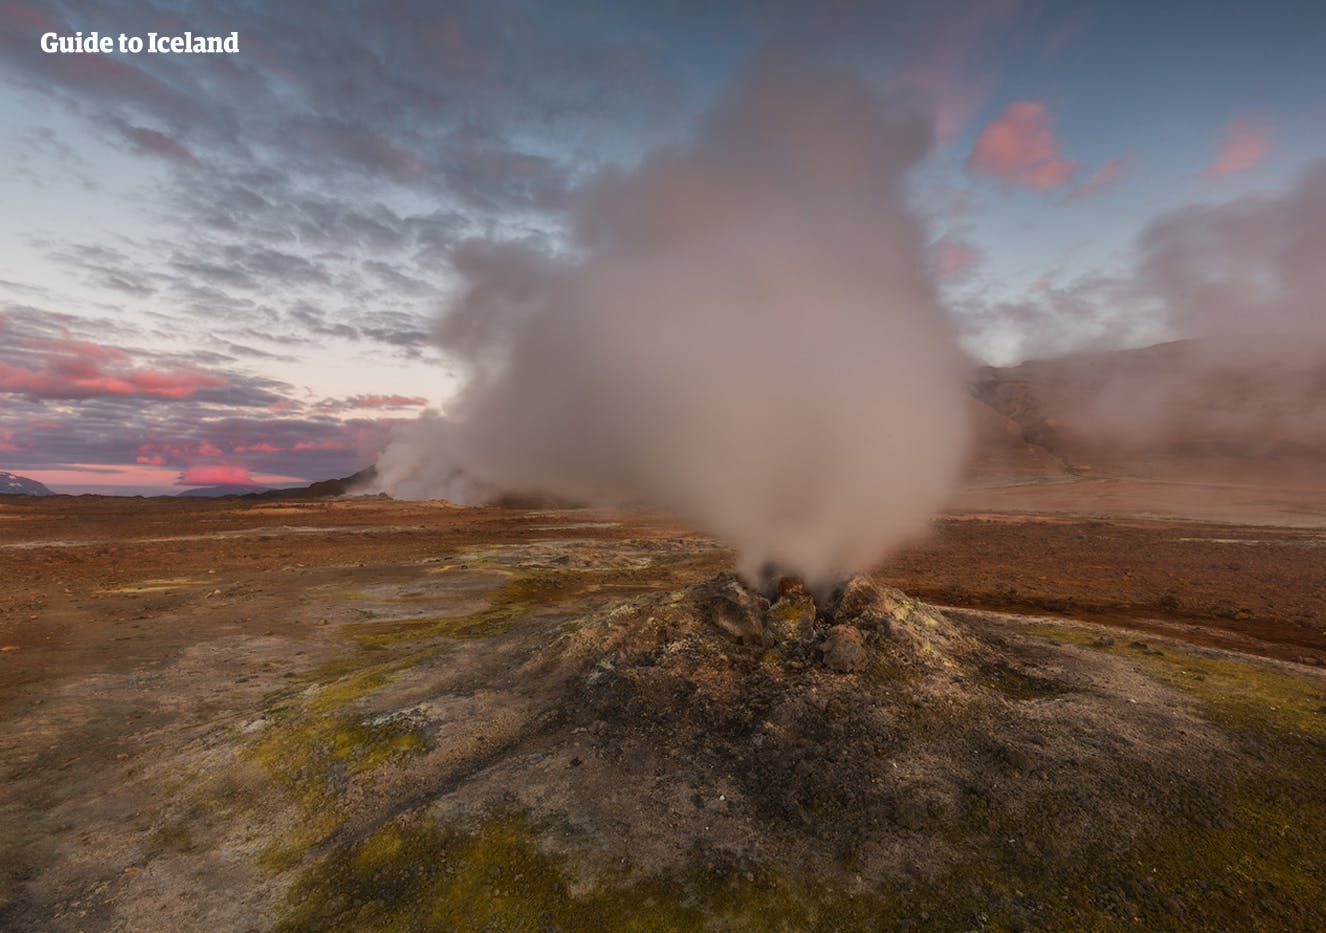 Fumerolles de vapeur et mares de boue en ébullition sur le col de Námaskard, près du lac Mývatn.